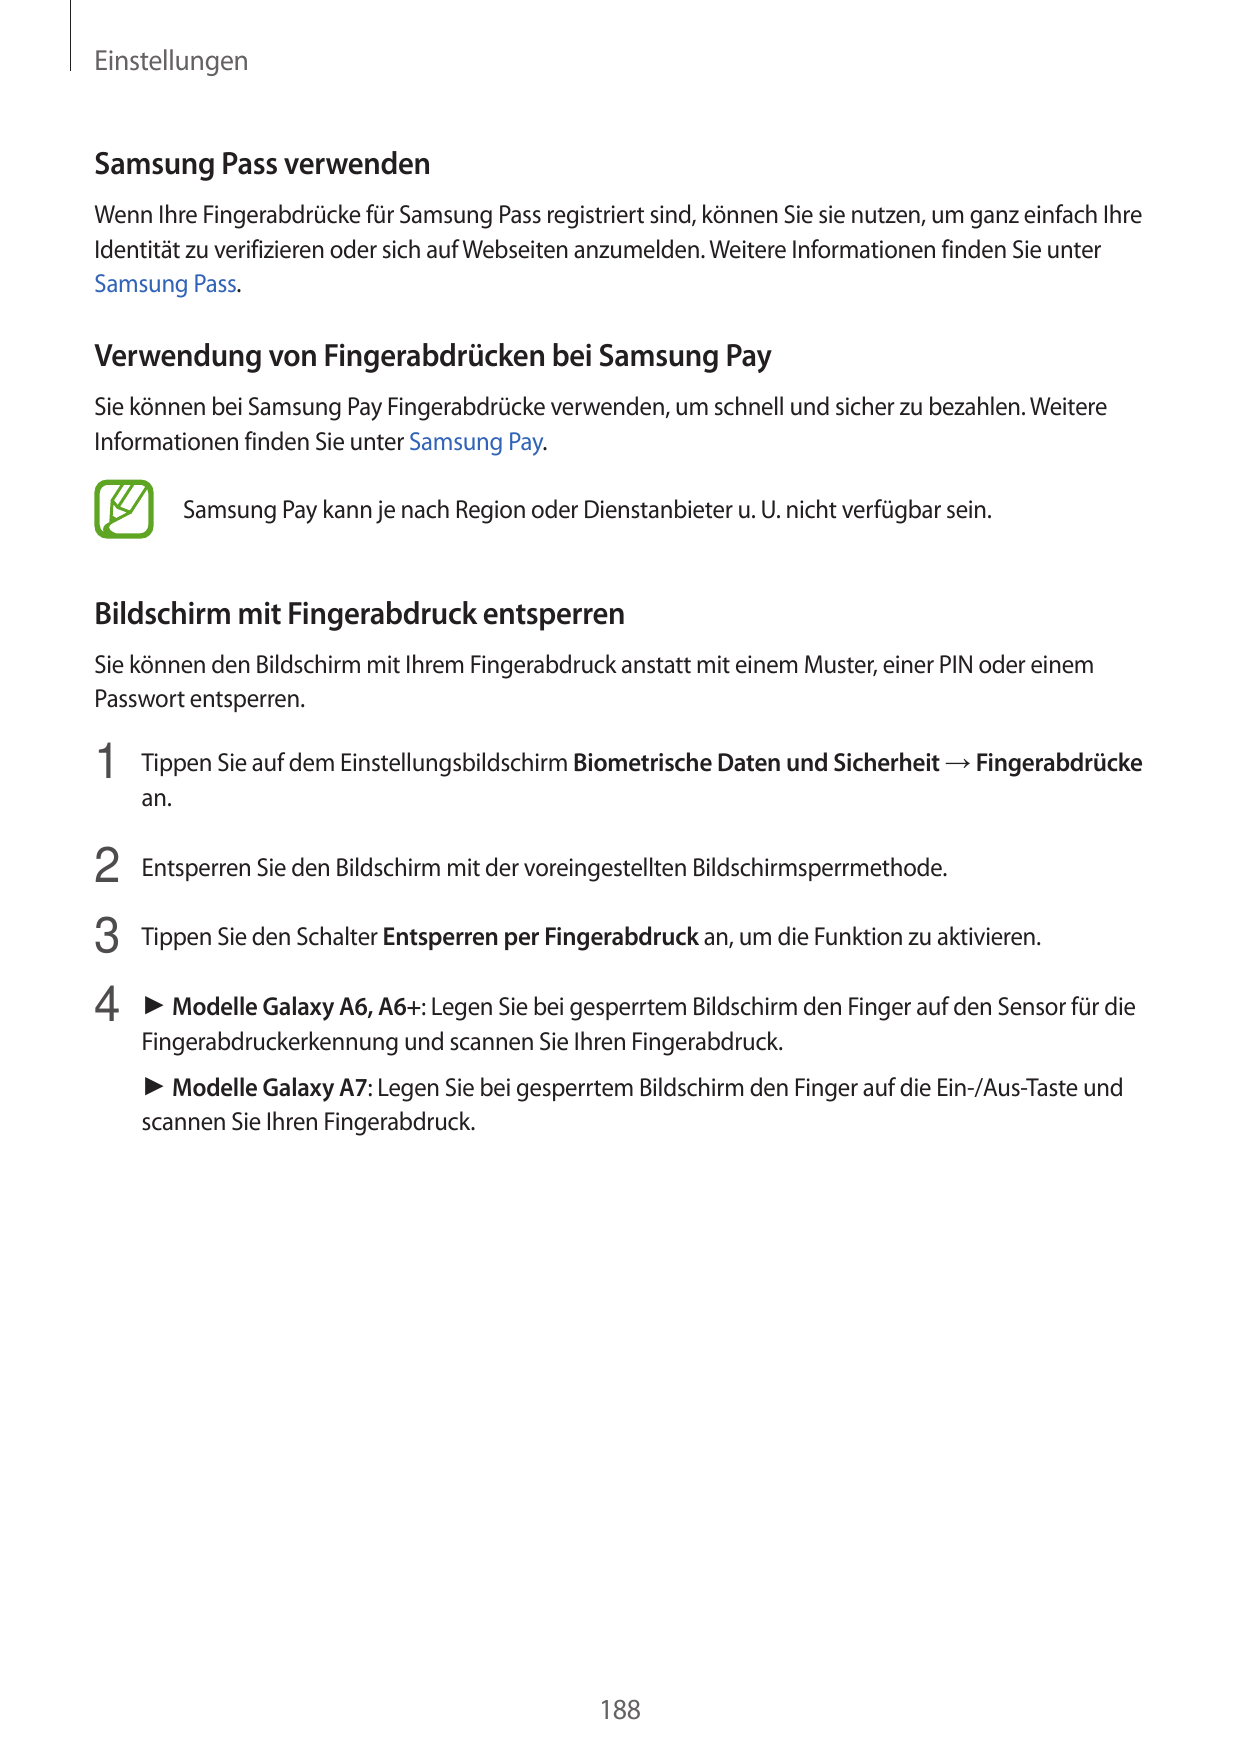 EinstellungenSamsung Pass verwendenWenn Ihre Fingerabdrücke für Samsung Pass registriert sind, können Sie sie nutzen, um ganz ei